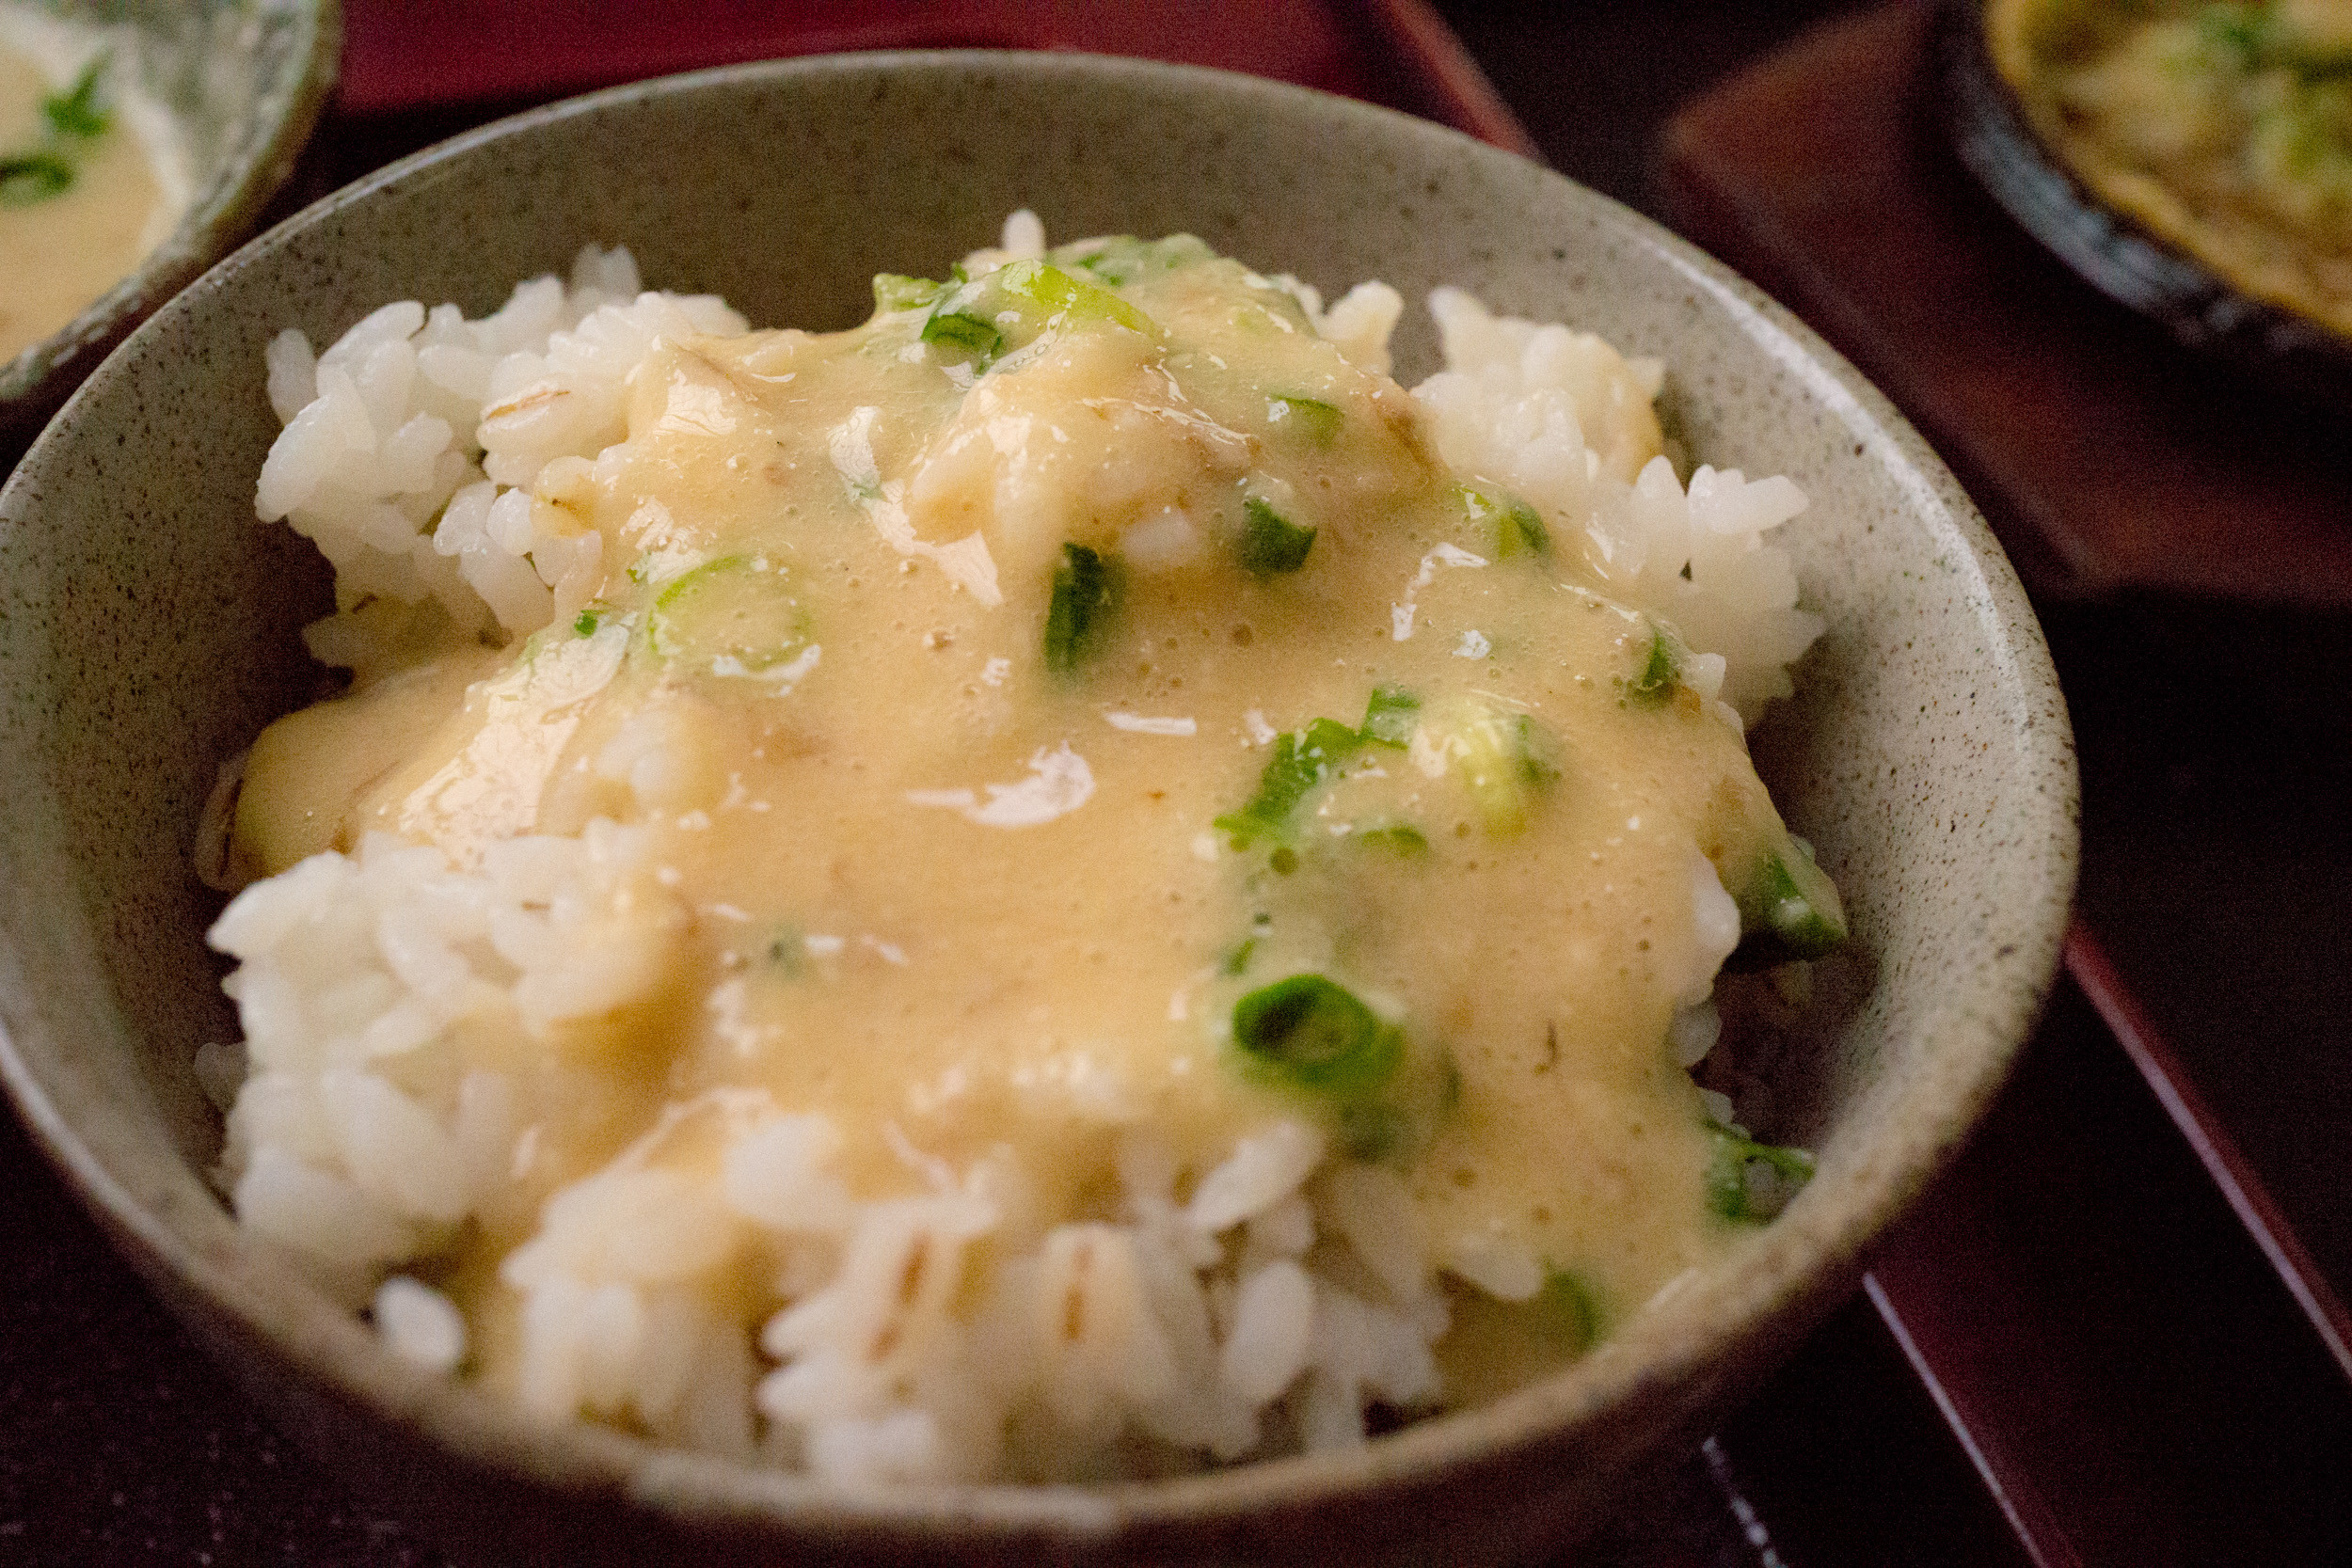 掛川の「いも汁処本丸」で自然薯を食べる